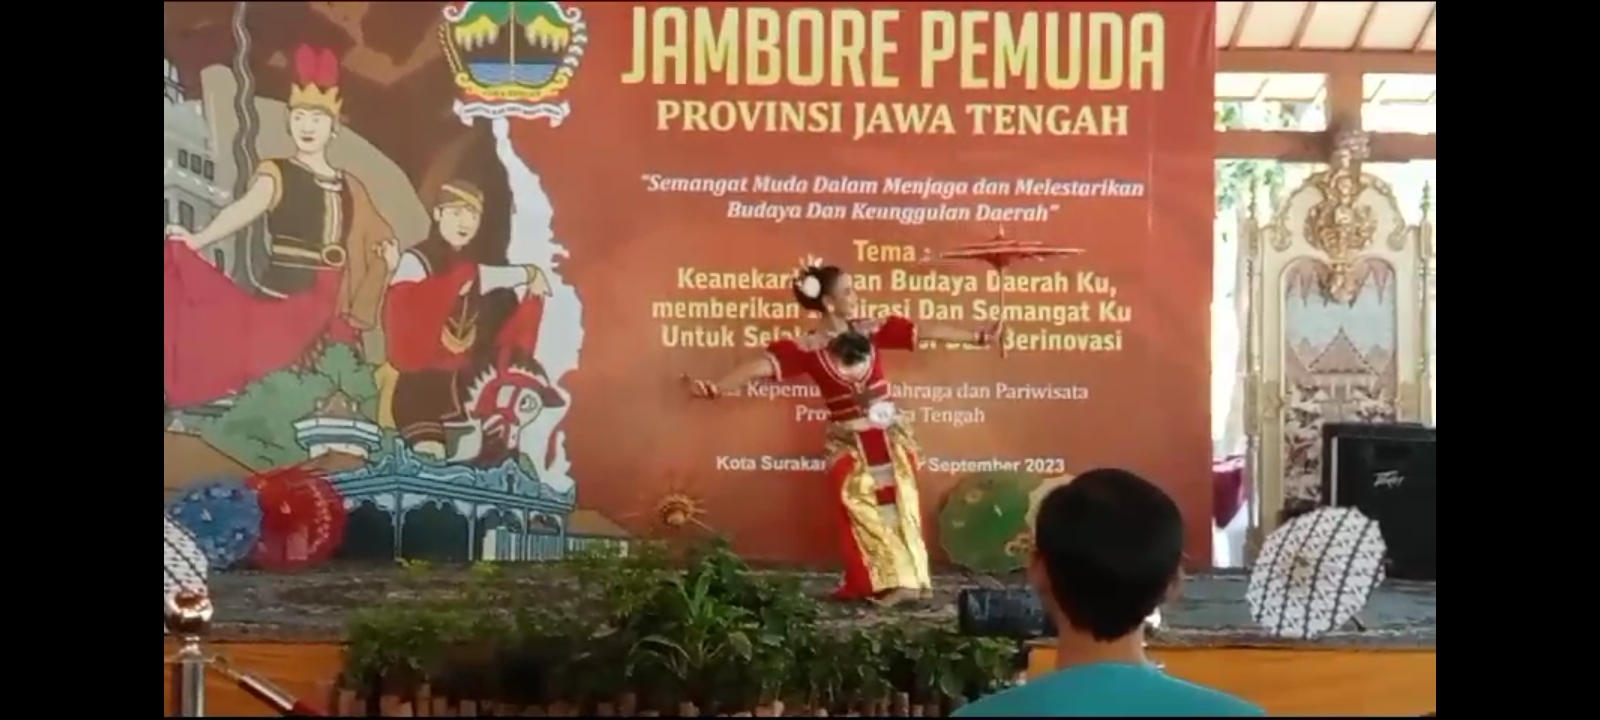 Foto Jambore Pemuda Provinsi Jawa Tengah 